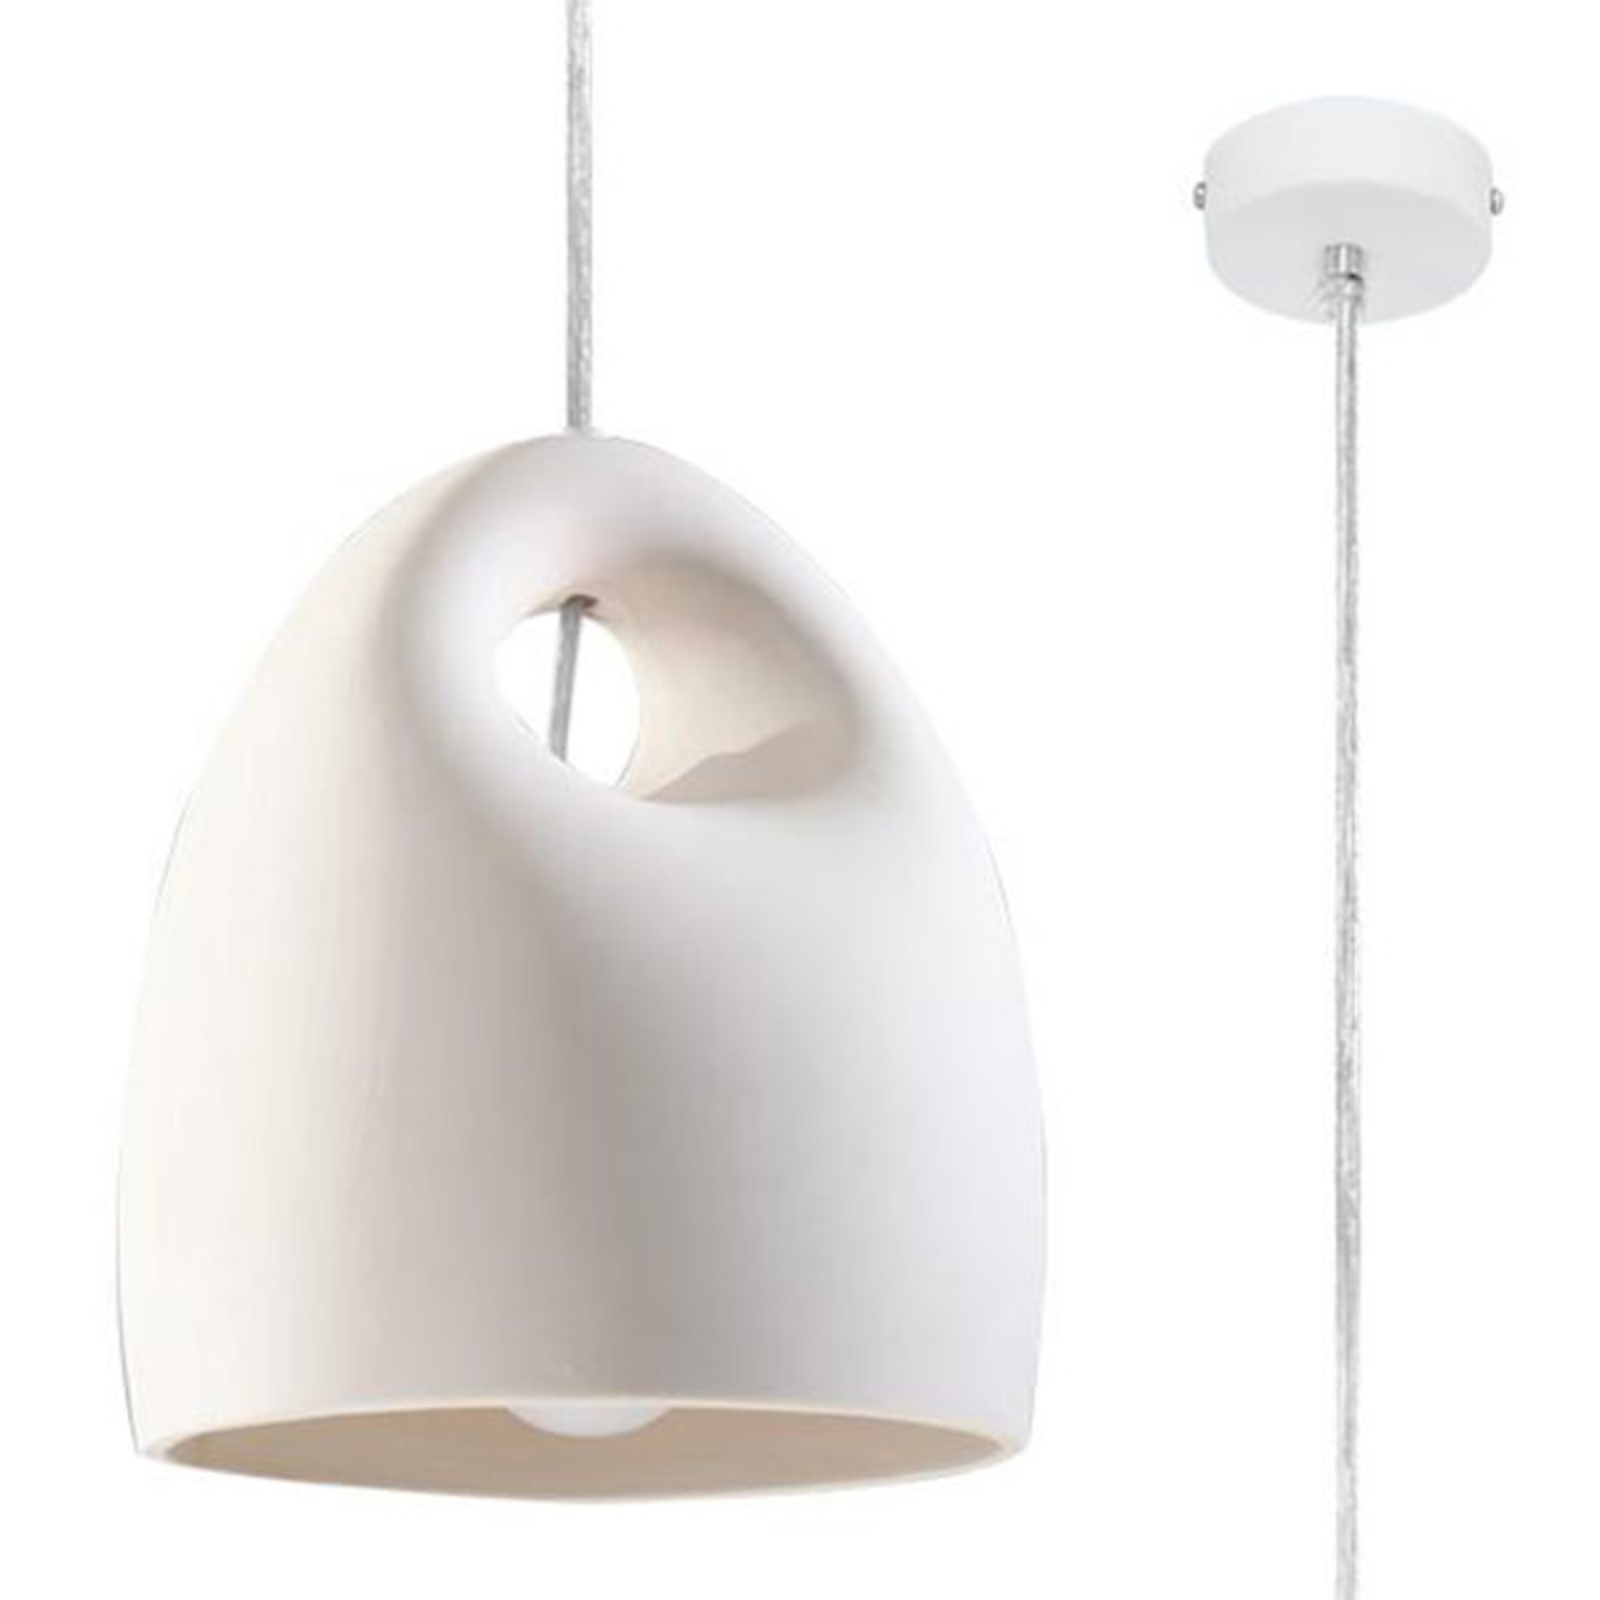 linnen Geaccepteerd het ergste Hanglamp Kano met witte keramische kap | Lampen24.be